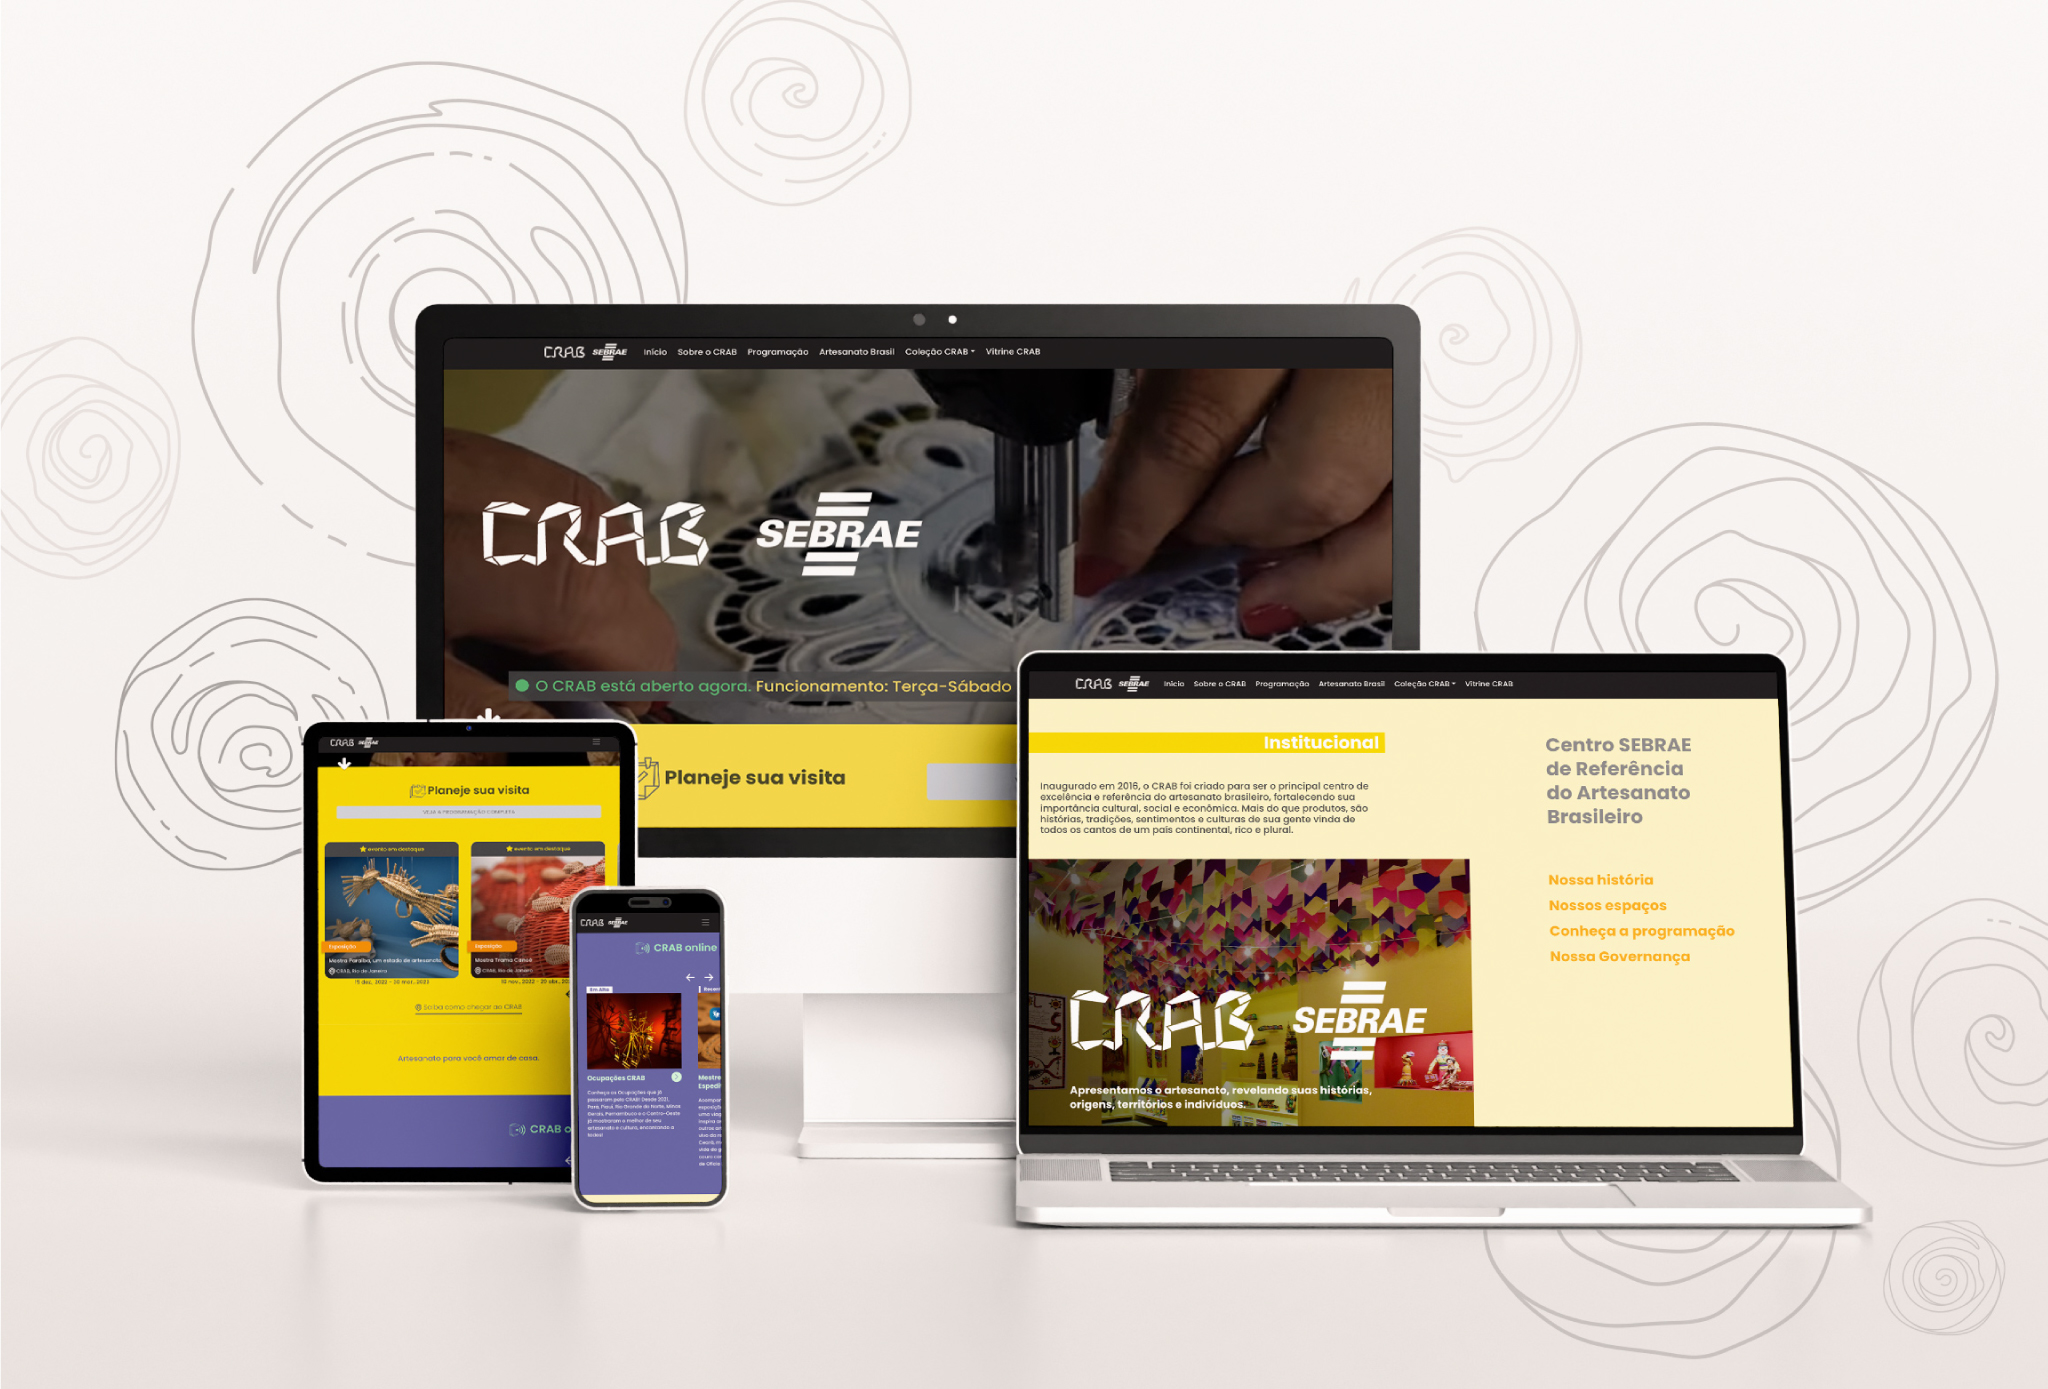 Foto de fundo cinza com um imac, macbook, tablet e celular exibindo em suas telas algumas das seções do portal CRAB.